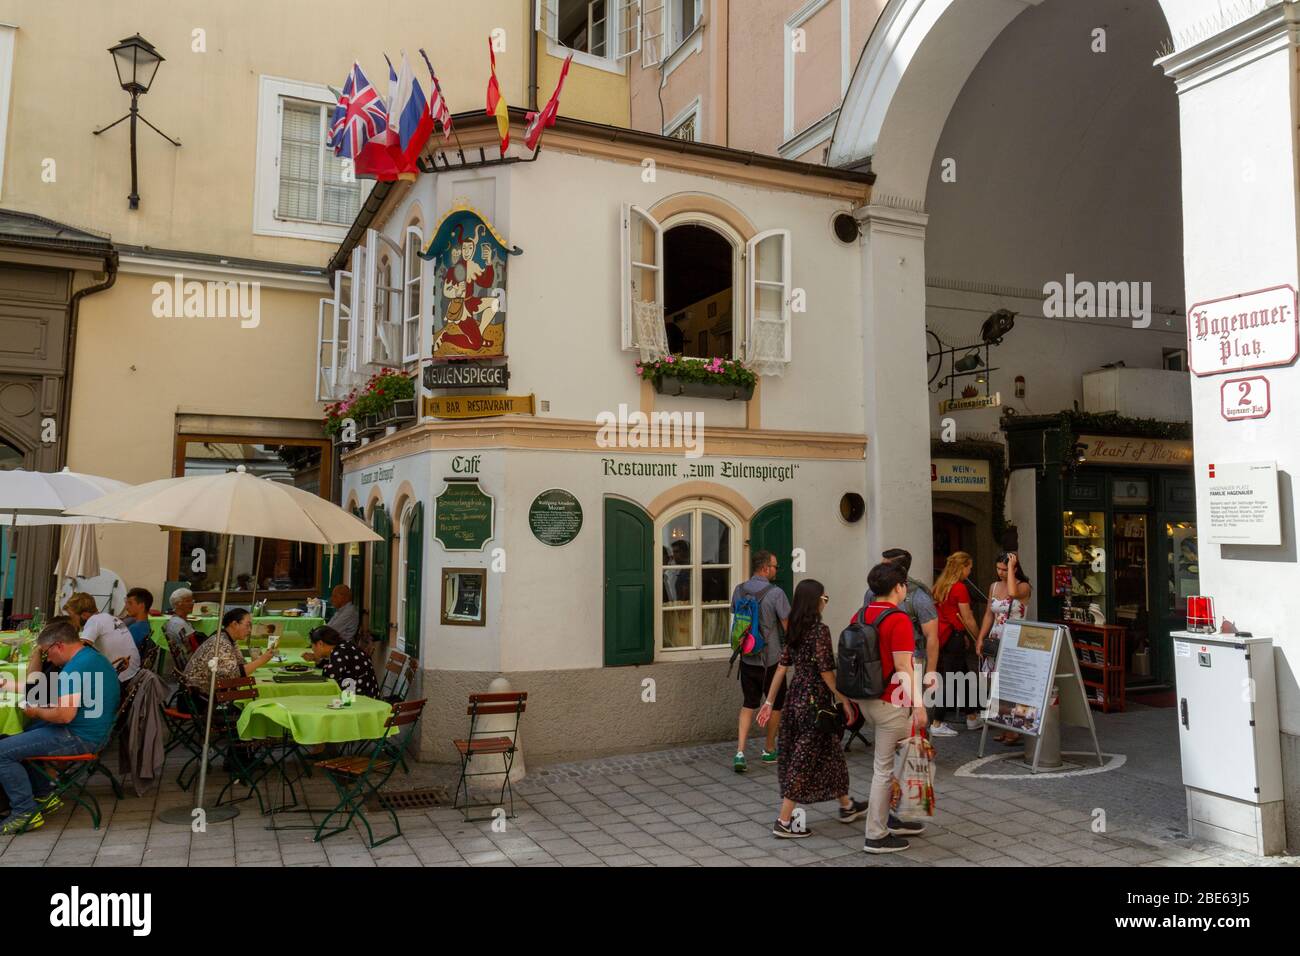 The Restaurant Zum Eulenspiegel (Eulenspiegel Restaurant) in Salzburg, Austria. Stock Photo